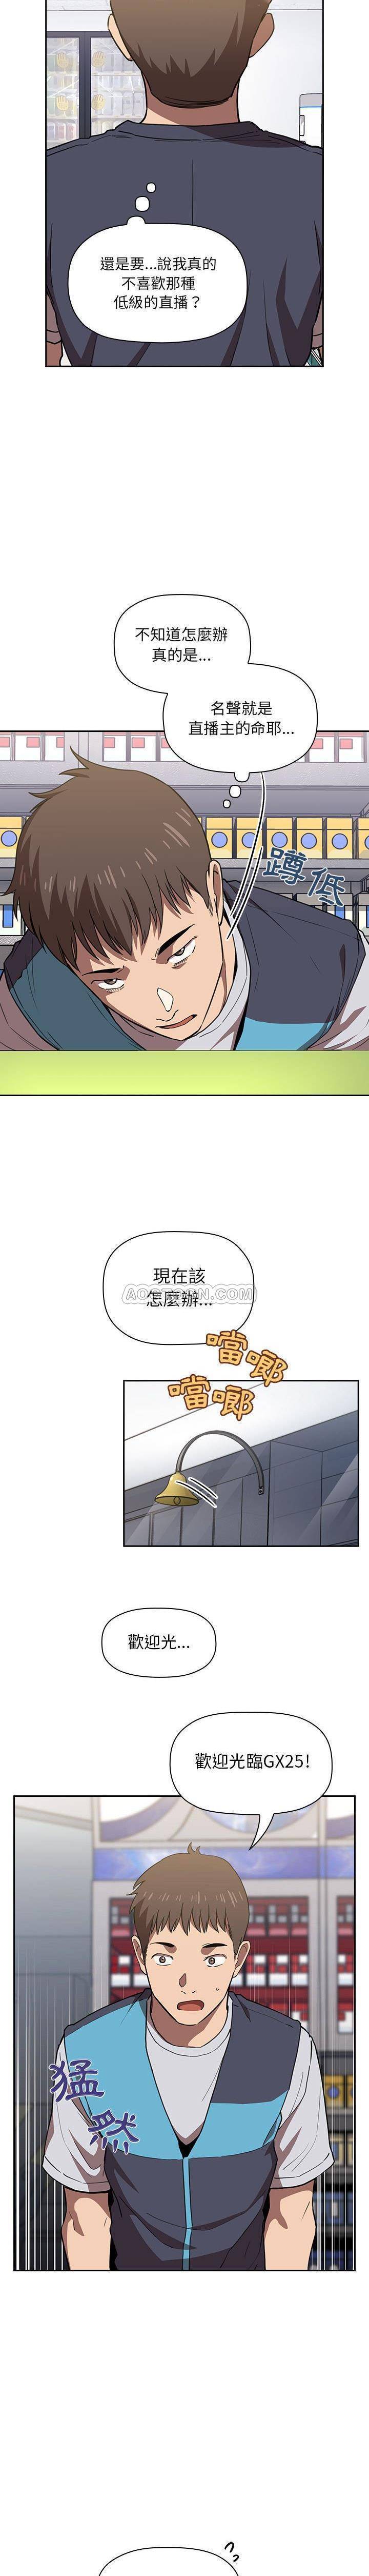 韩国污漫画 BJ的夢幻直播 第7话 20